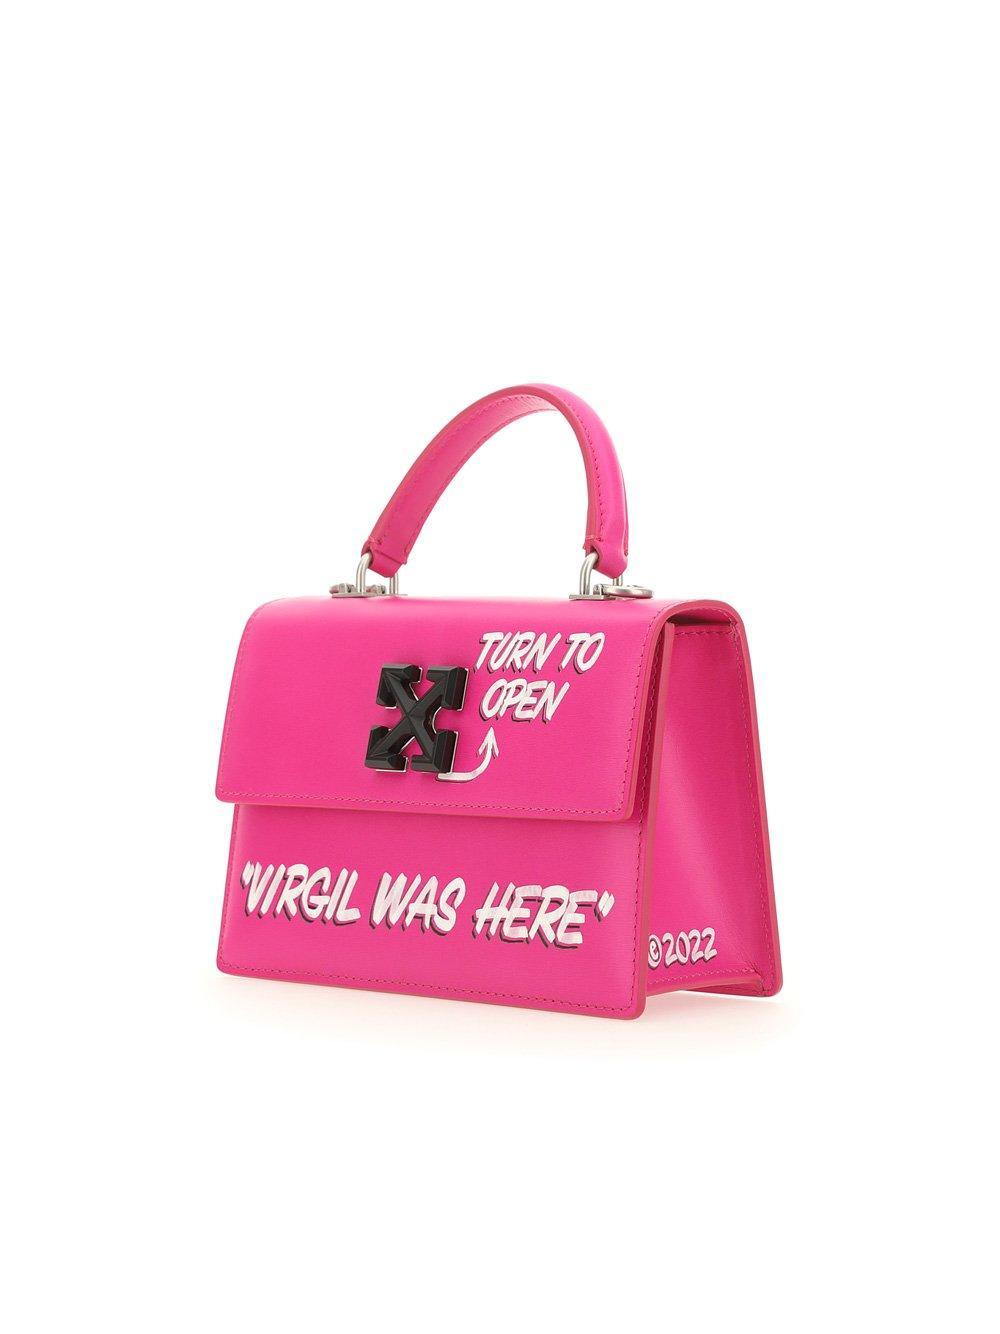 Off-White c/o Virgil Abloh Jitney 14 Tote Bag in Pink